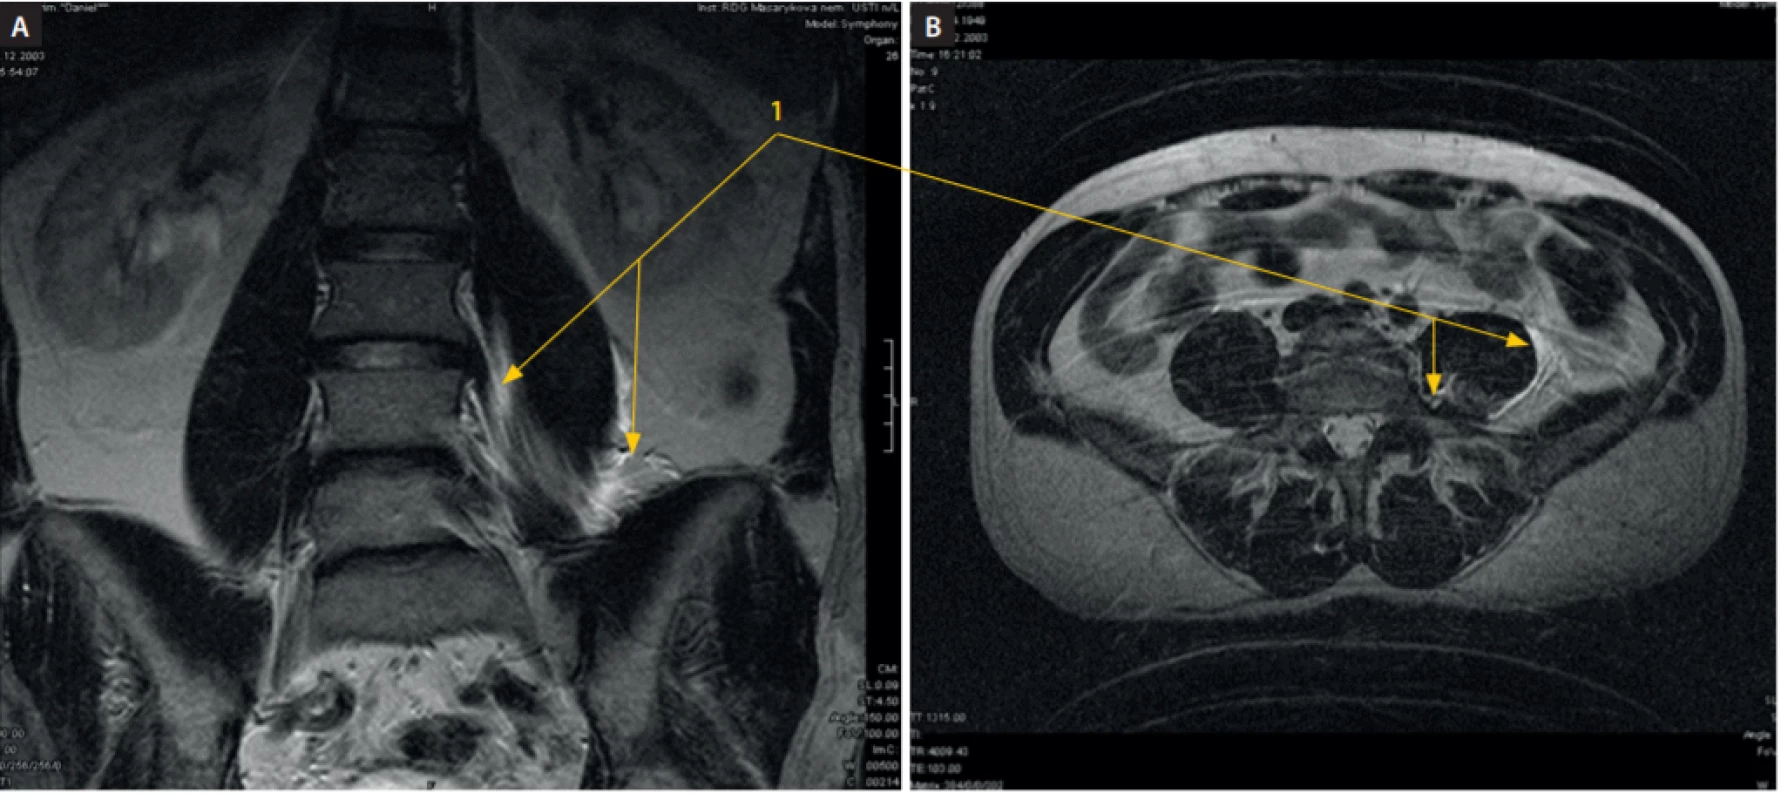 MRI dutiny břišní, vertikální řez, po podání 20 ml fyziologického roztoku cestou psoas compartment blok ve výši L2–3 vlevo a 20 ml fyziologického
roztoku cestou infrainquinálního femorálního bloku (3 in 1) vpravo. A: Na vertikálním řezu je patrná náplň psoatického a iliopsoatického kompartmentu
z mediální a laterální strany m. psoas major (1). B: Na horizontálním řezu z téhož vyšetření je patrná náplň kraniální části psoatické fascie na mediální,
dorsální a laterální části (1). Kraniokaudálním směrem byla náplň identifikovatelná na rozhraní L5–S1